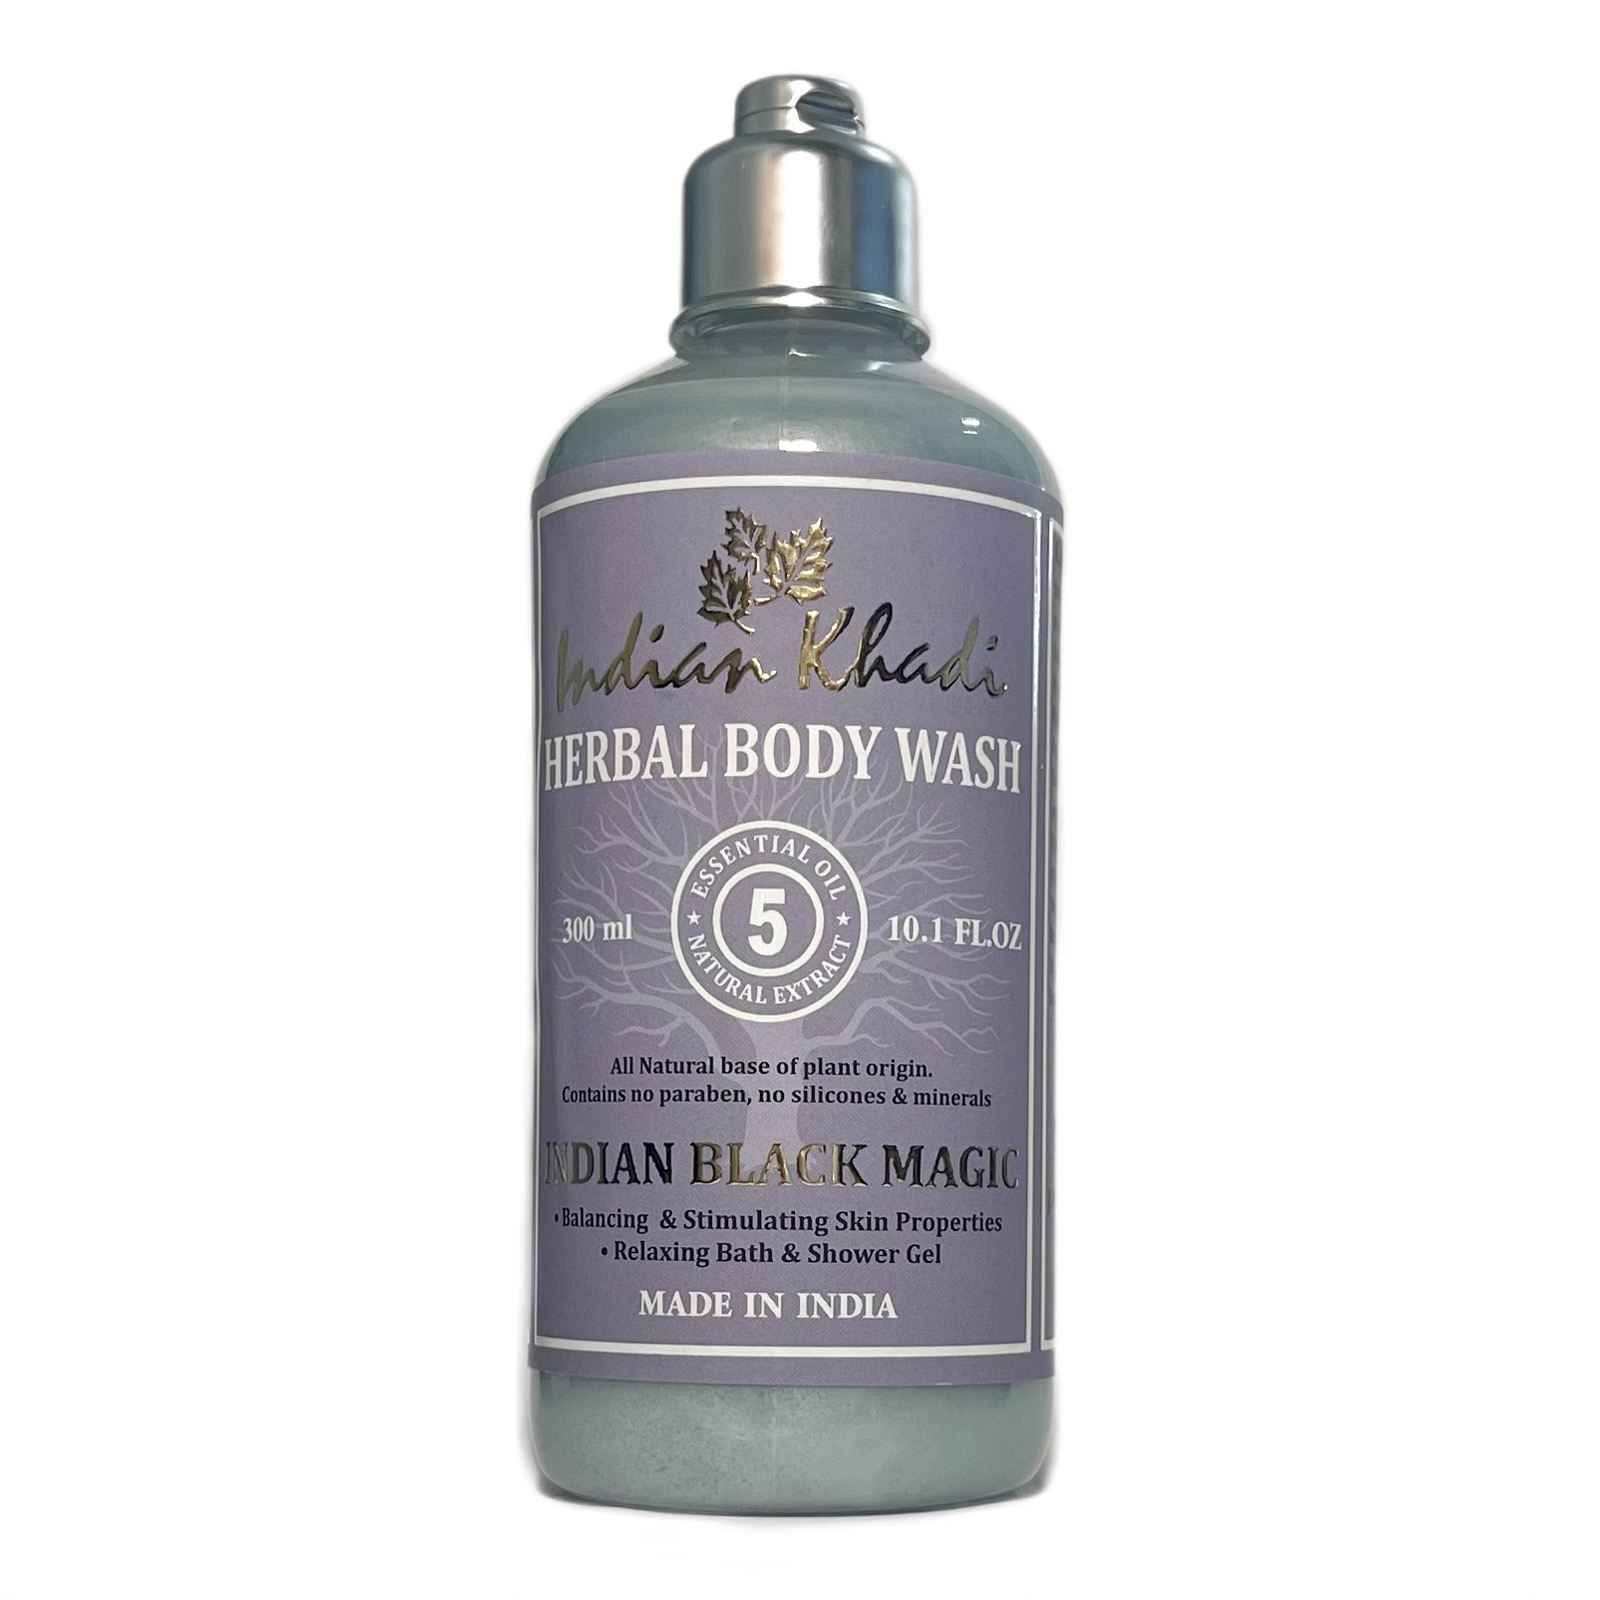 Herbal Body Wash INDIAN BLACK MAGIC, Indian Khadi (Расслабляющий гель для душа ИНДИЙСКАЯ ЧЕРНАЯ МАГИЯ, Балансирующий и стимулирующий кожу, Индиан Кхади), 300 мл.